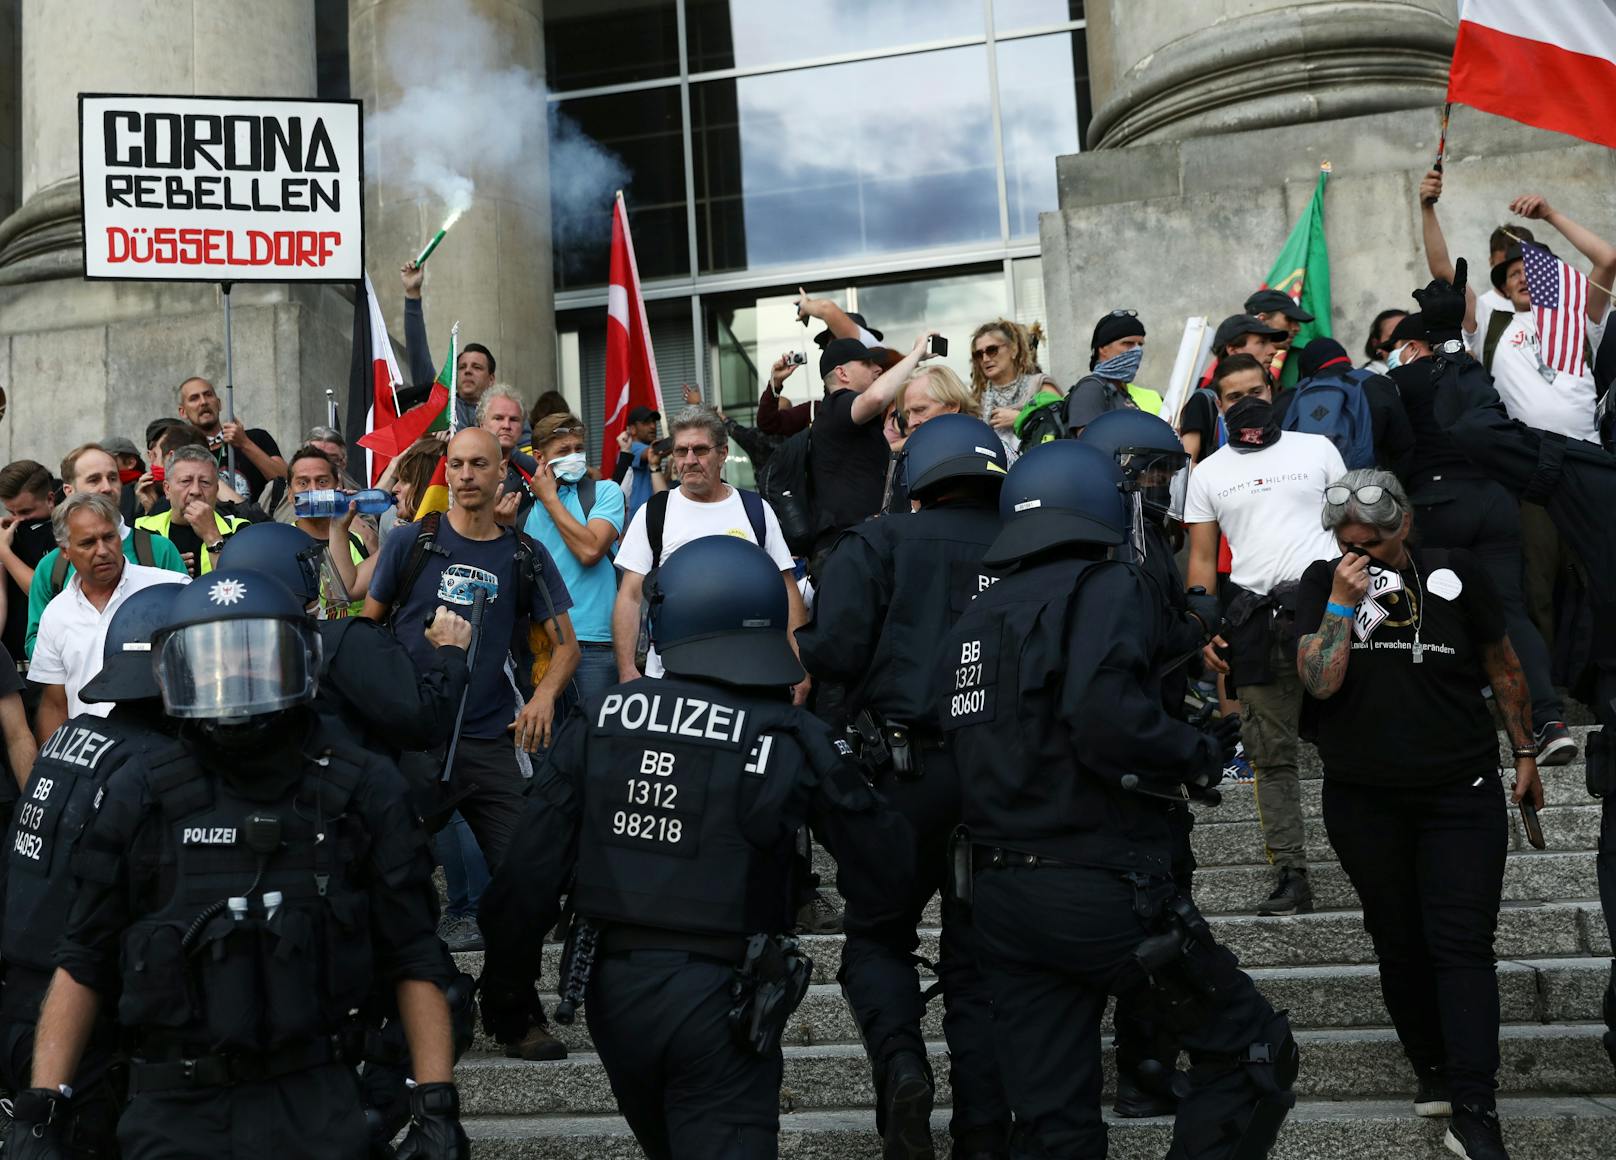 Anti-Corona-Demo vor dem Reichstag in Berlin (29. August 2020)